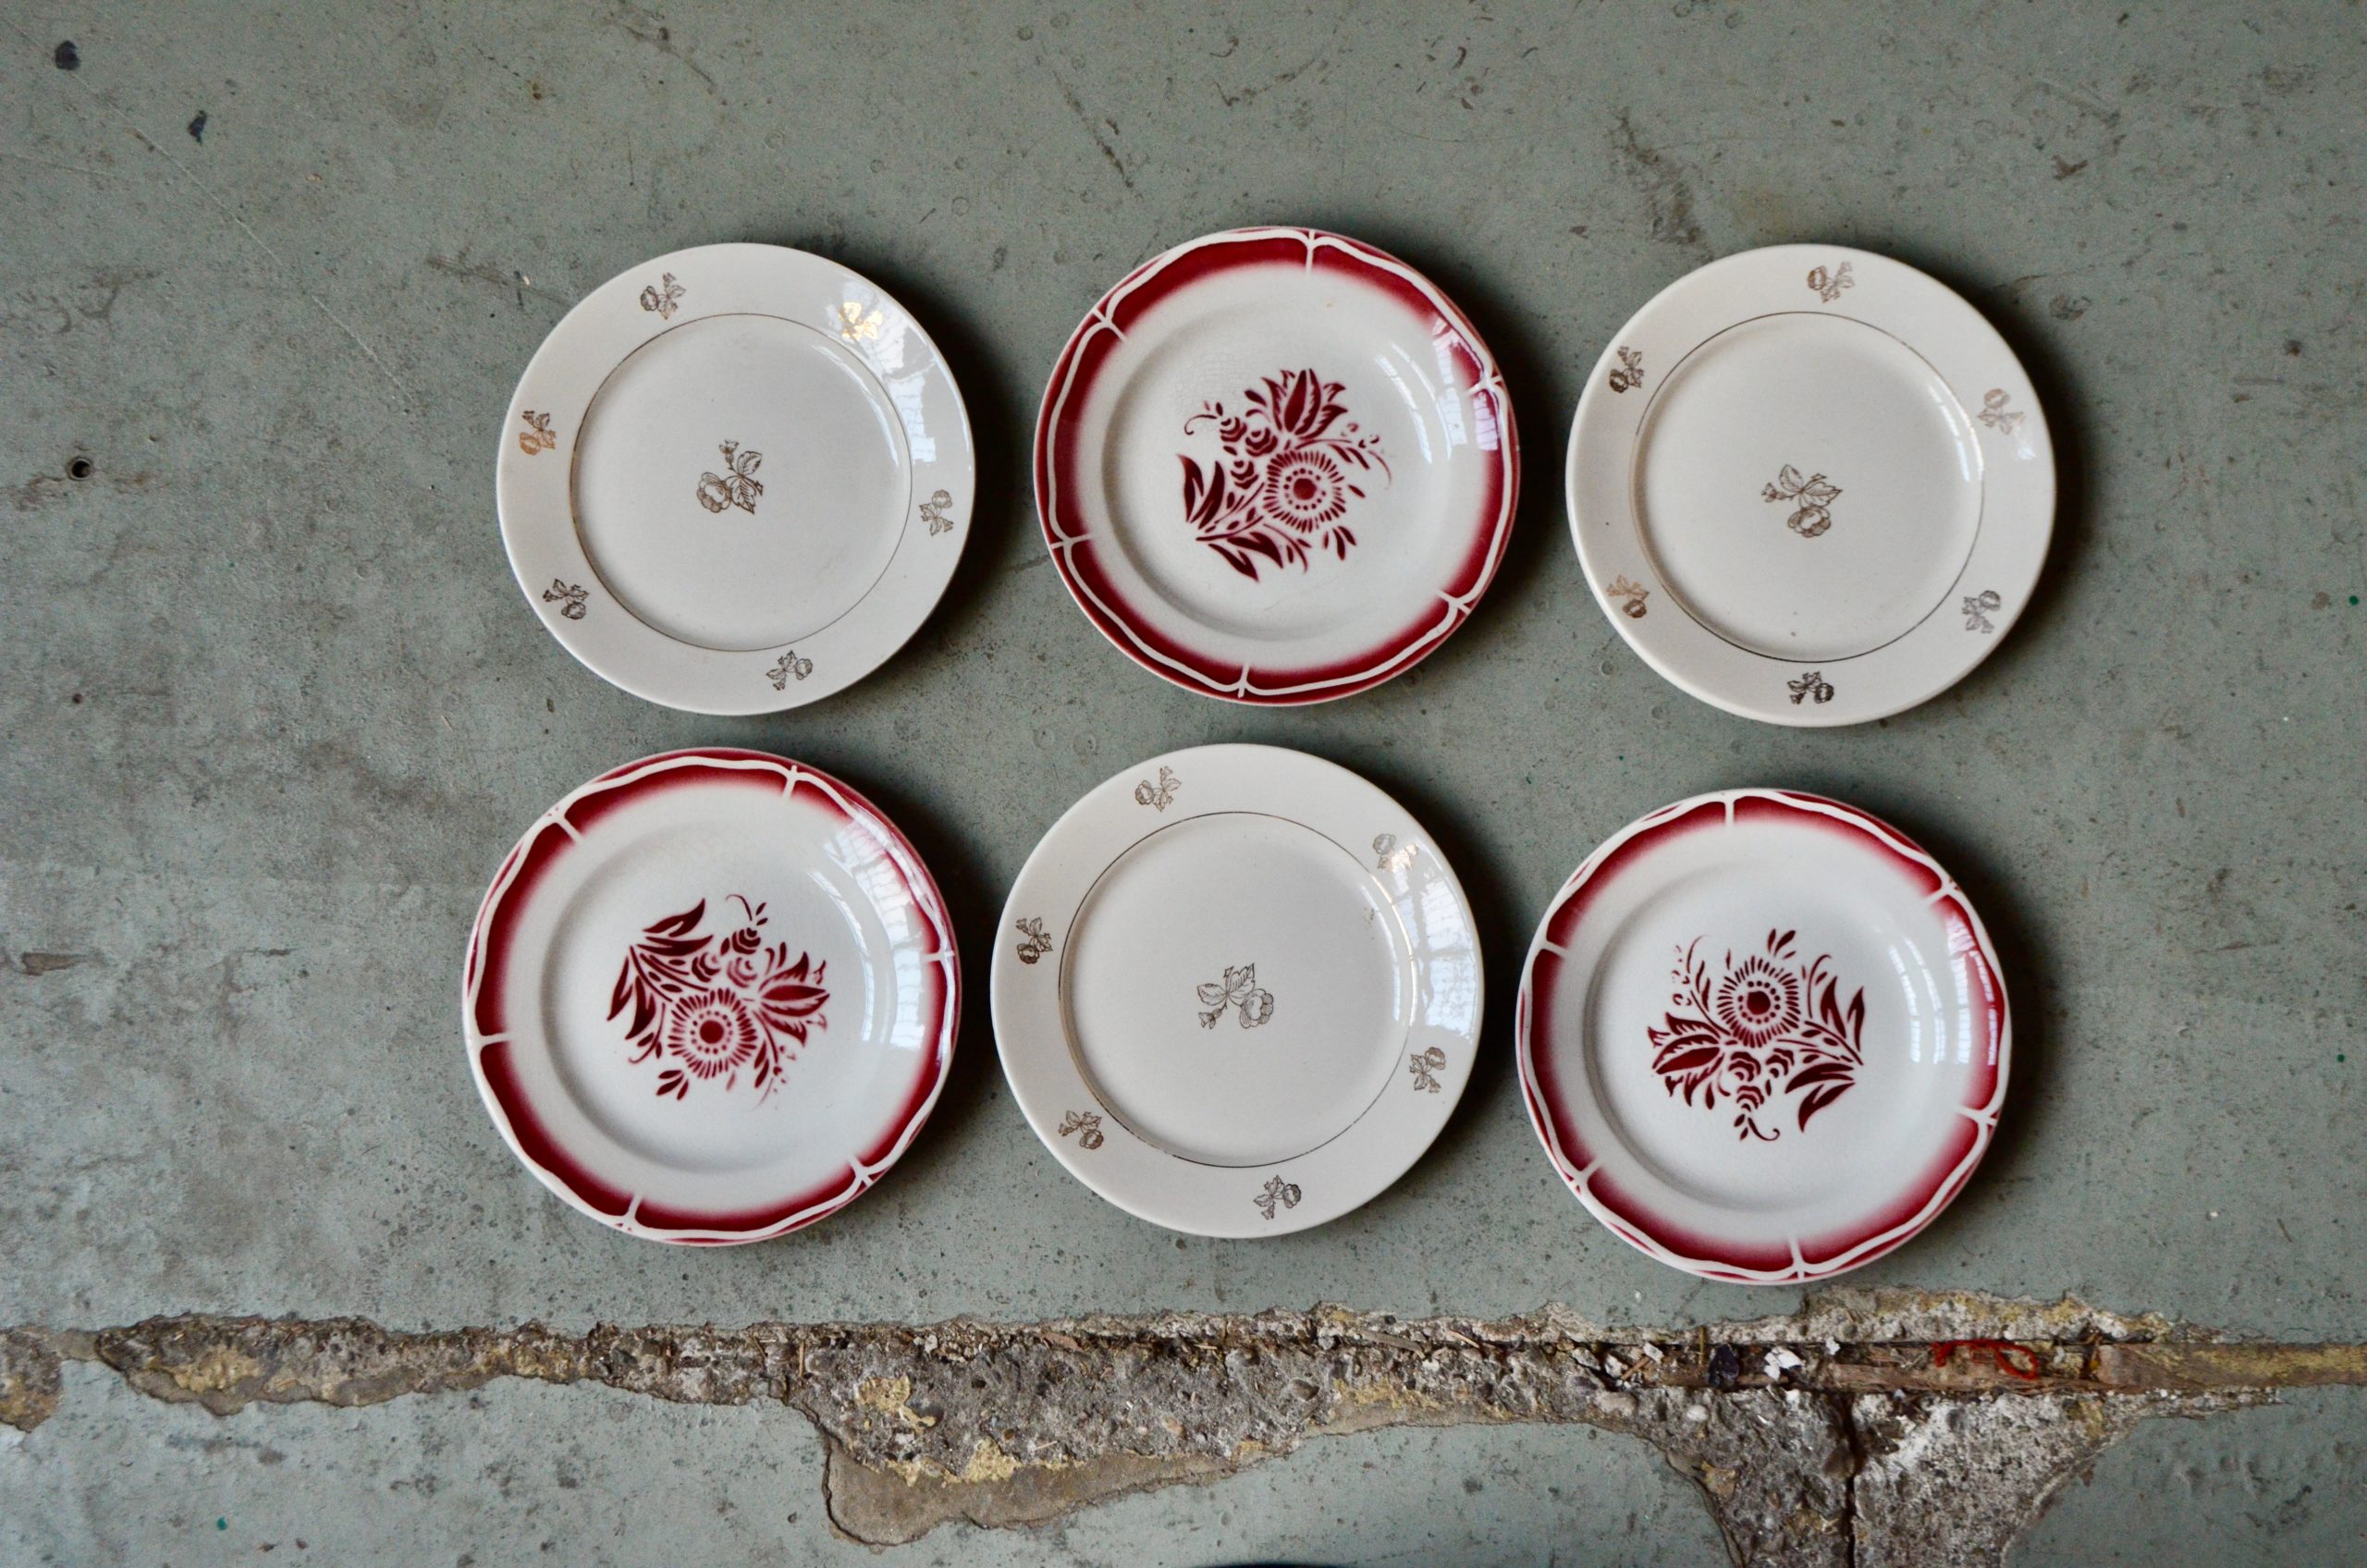 Assiettes vintage rétro dépareillées bohème vaisselle ancien campagne chic rustique art de la table